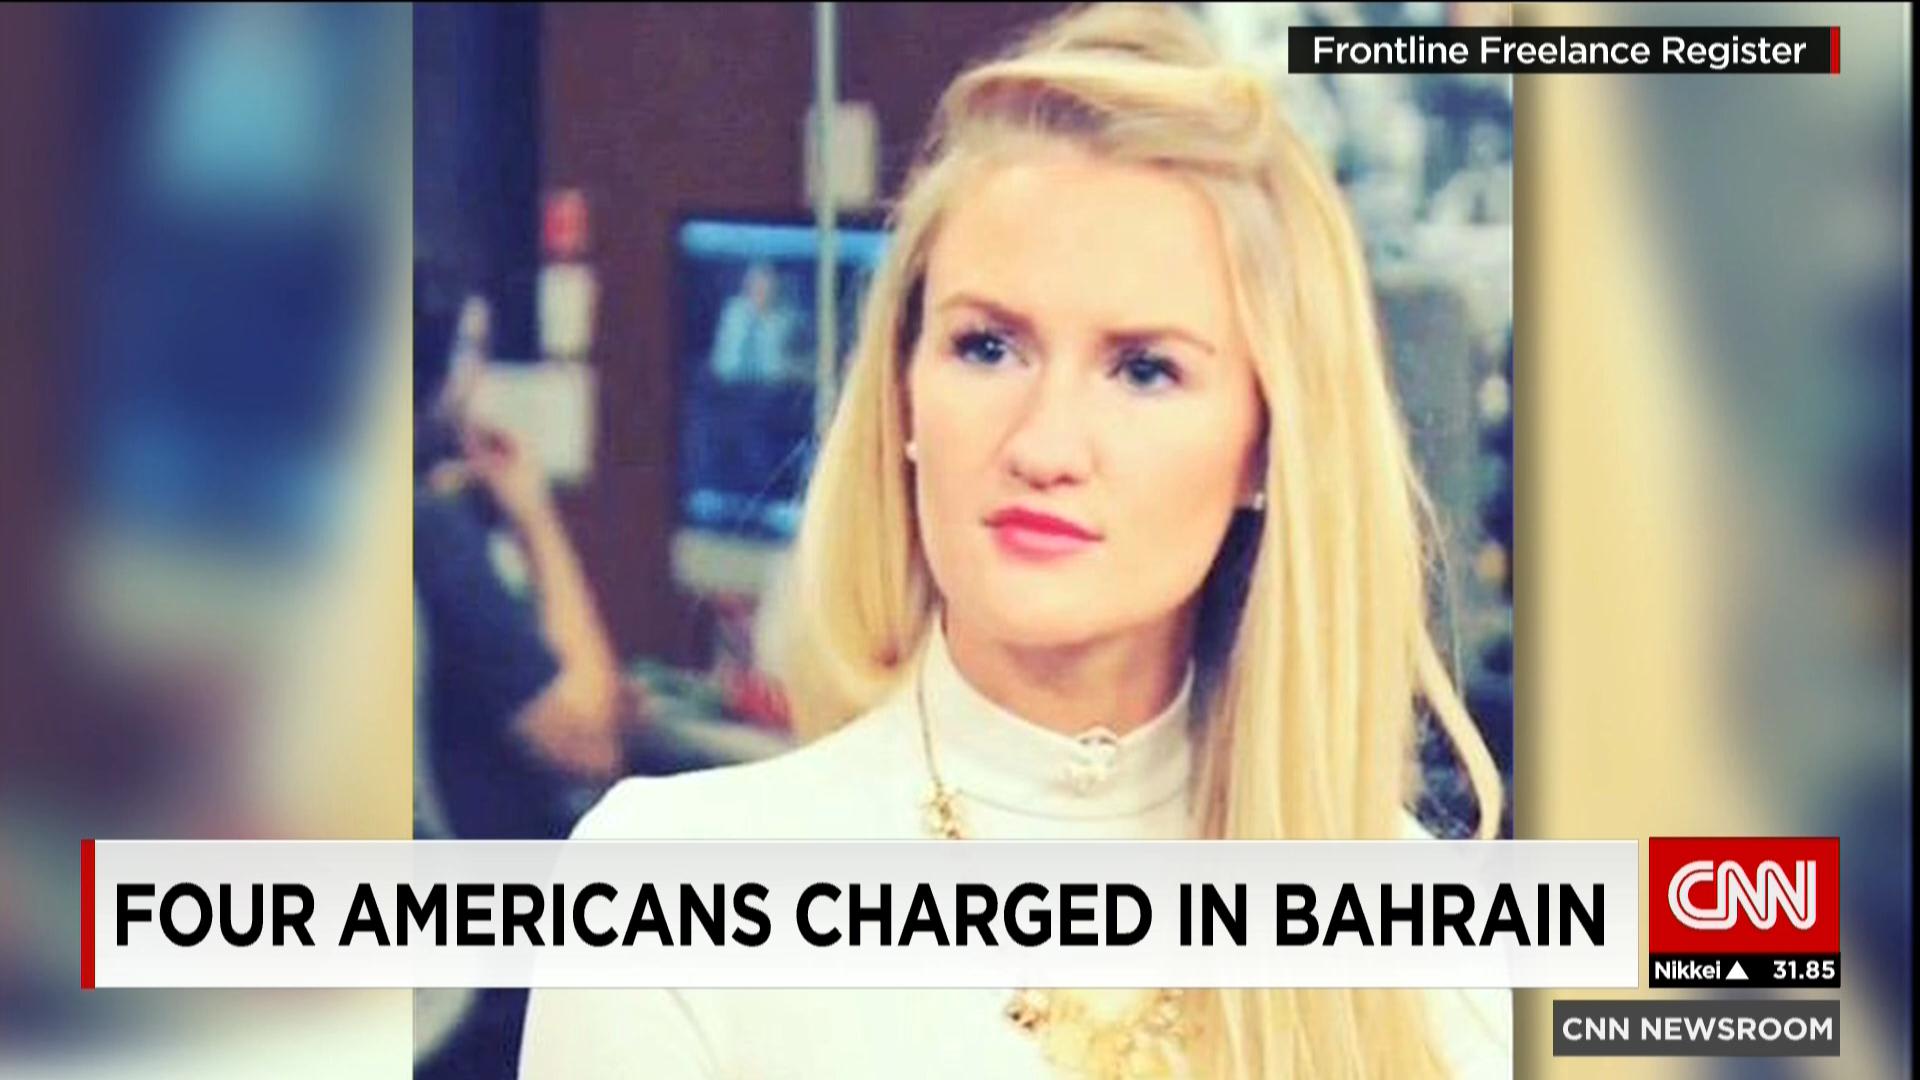 البحرين: النيابة العامة توجه تهما لأربعة معتقلين أمريكيين وتُفرج عنهم على ذمة التحقيق